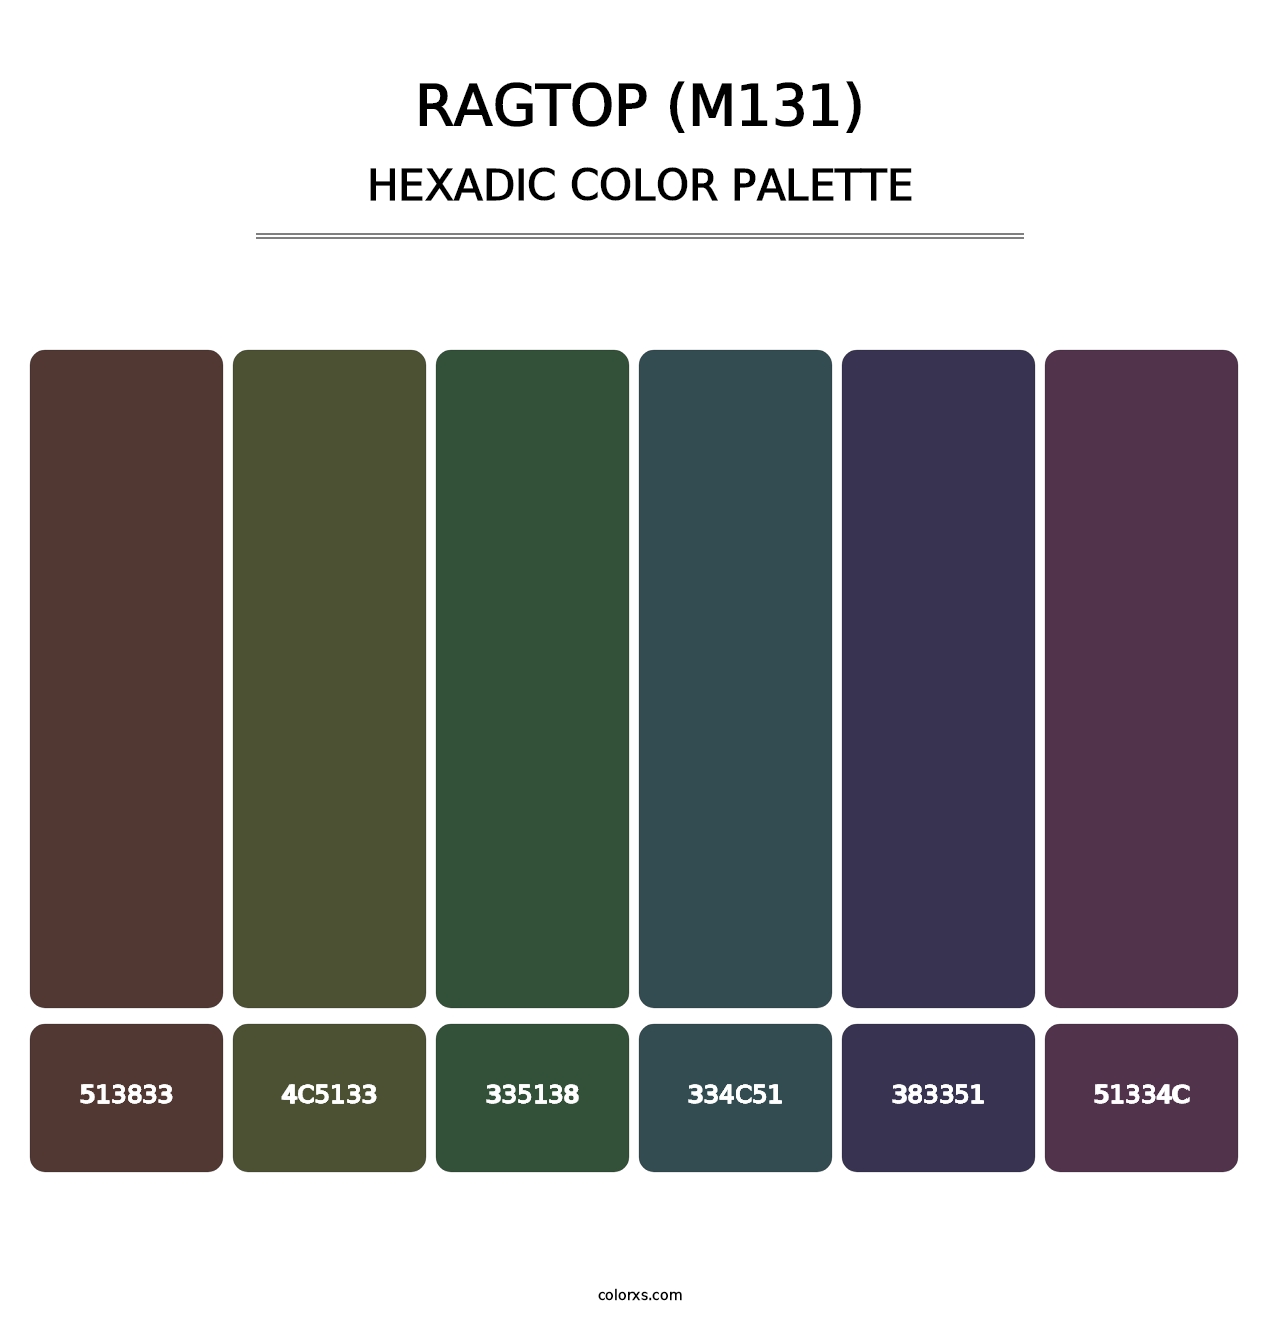 Ragtop (M131) - Hexadic Color Palette